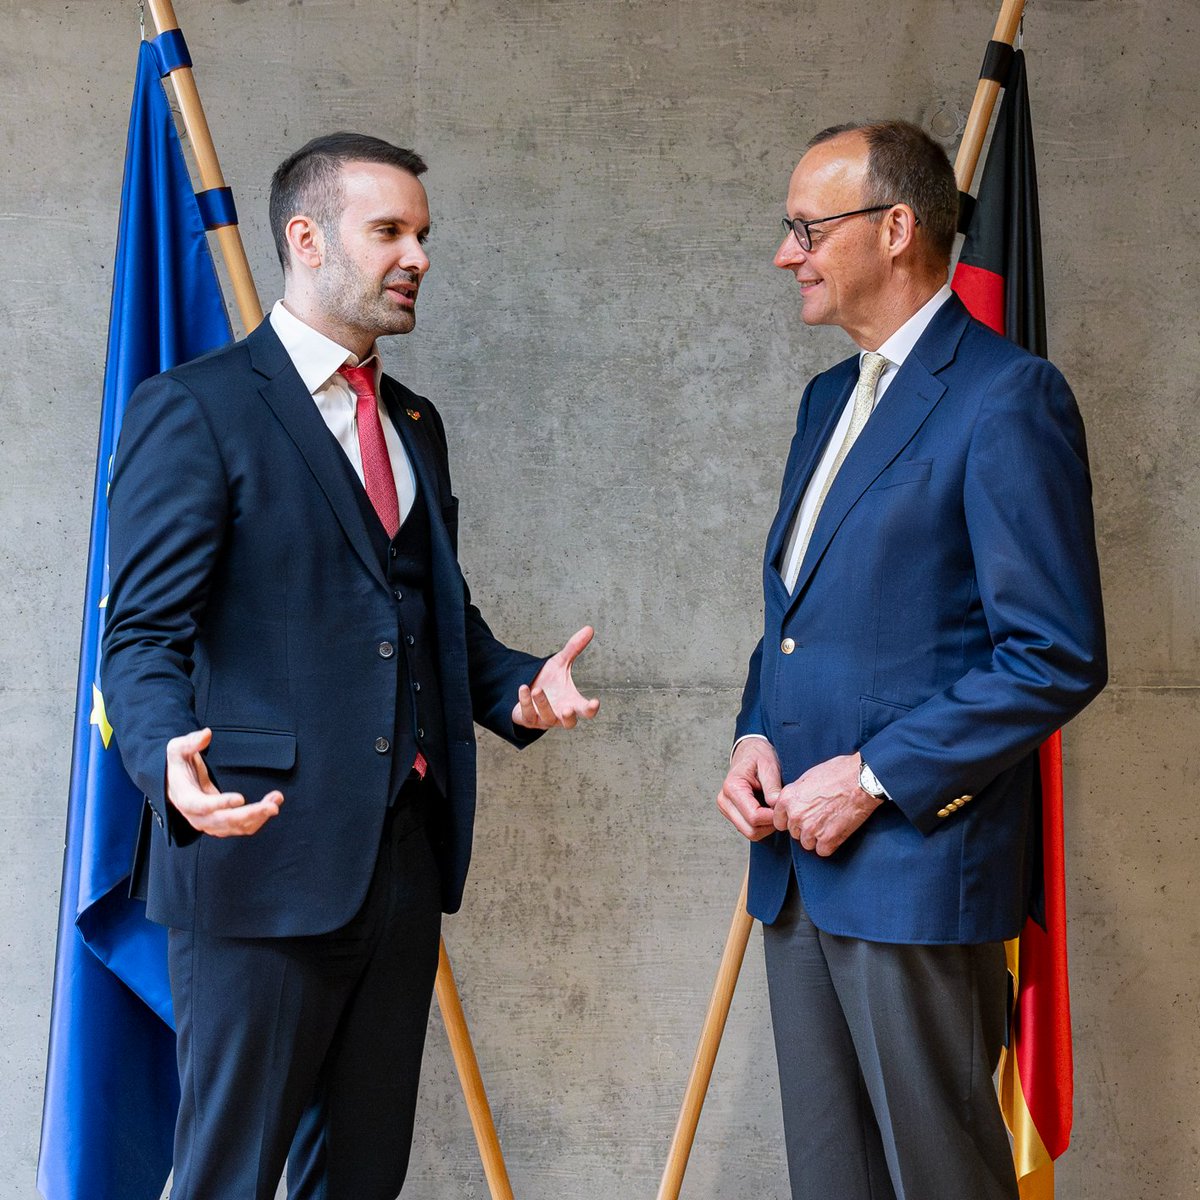 In Zeiten globaler Herausforderungen brauchen wir ein starkes #Europa mit einem stabilen #Westbalkan. Heute traf @_FriedrichMerz den Premierminister Montenegros @MickeySpajic. Im Gespräch ging es v.a. um #Montenegros Fortschritte auf dem Weg in die Europäische Union.